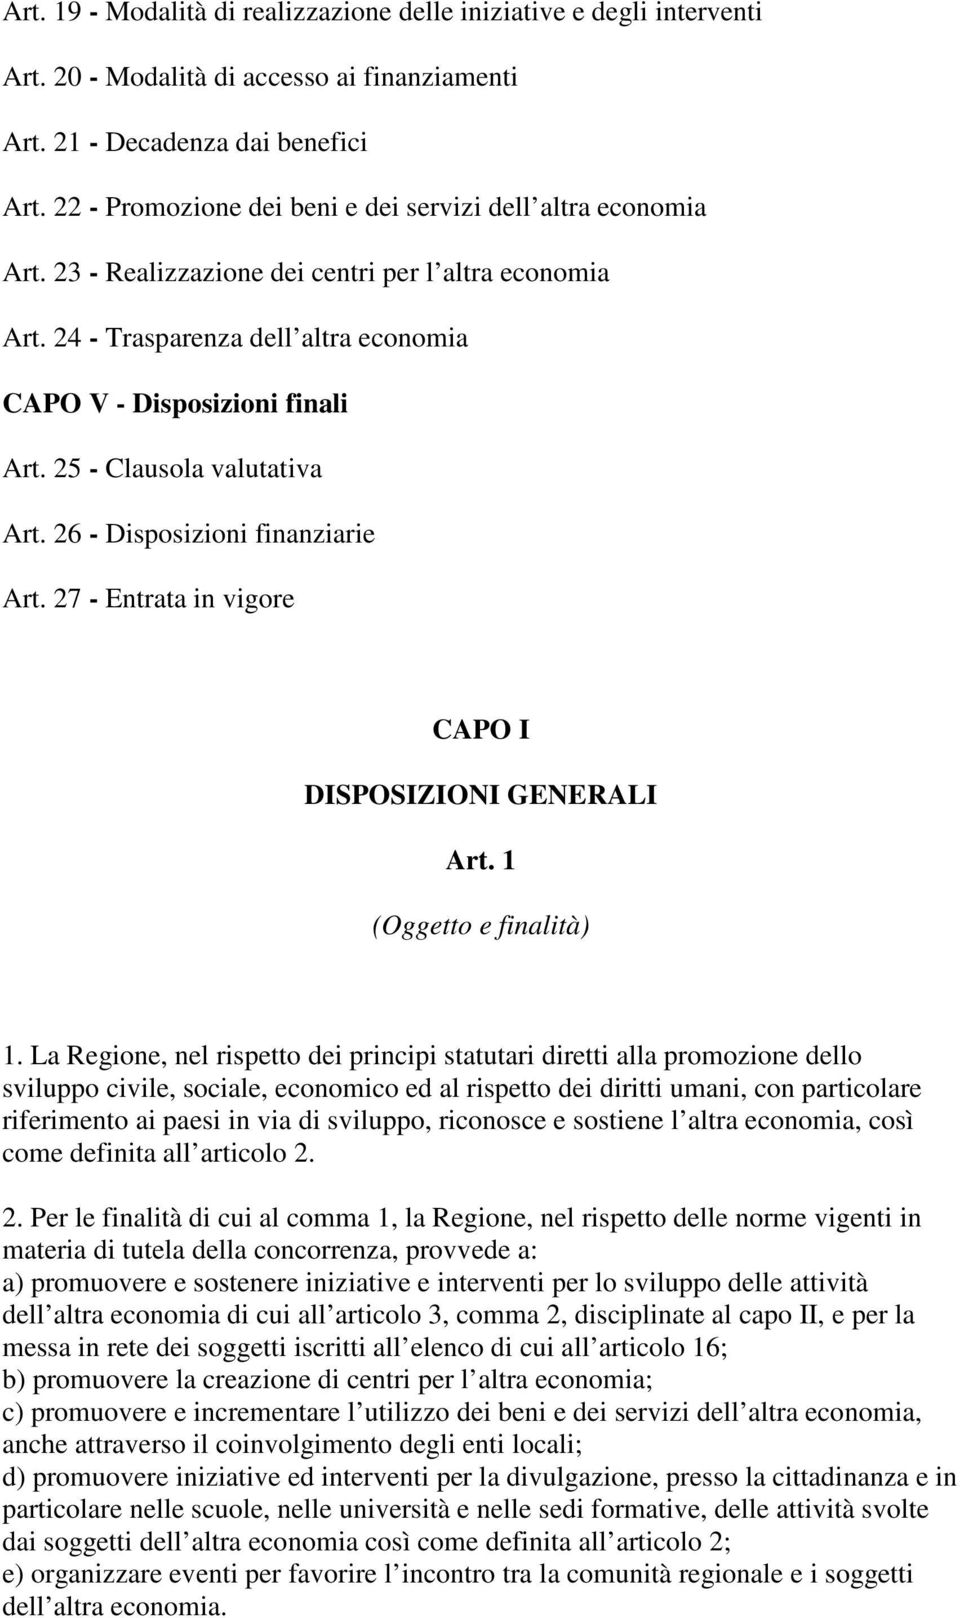 25 - Clausola valutativa Art. 26 - Disposizioni finanziarie Art. 27 - Entrata in vigore CAPO I DISPOSIZIONI GENERALI Art. 1 (Oggetto e finalità) 1.